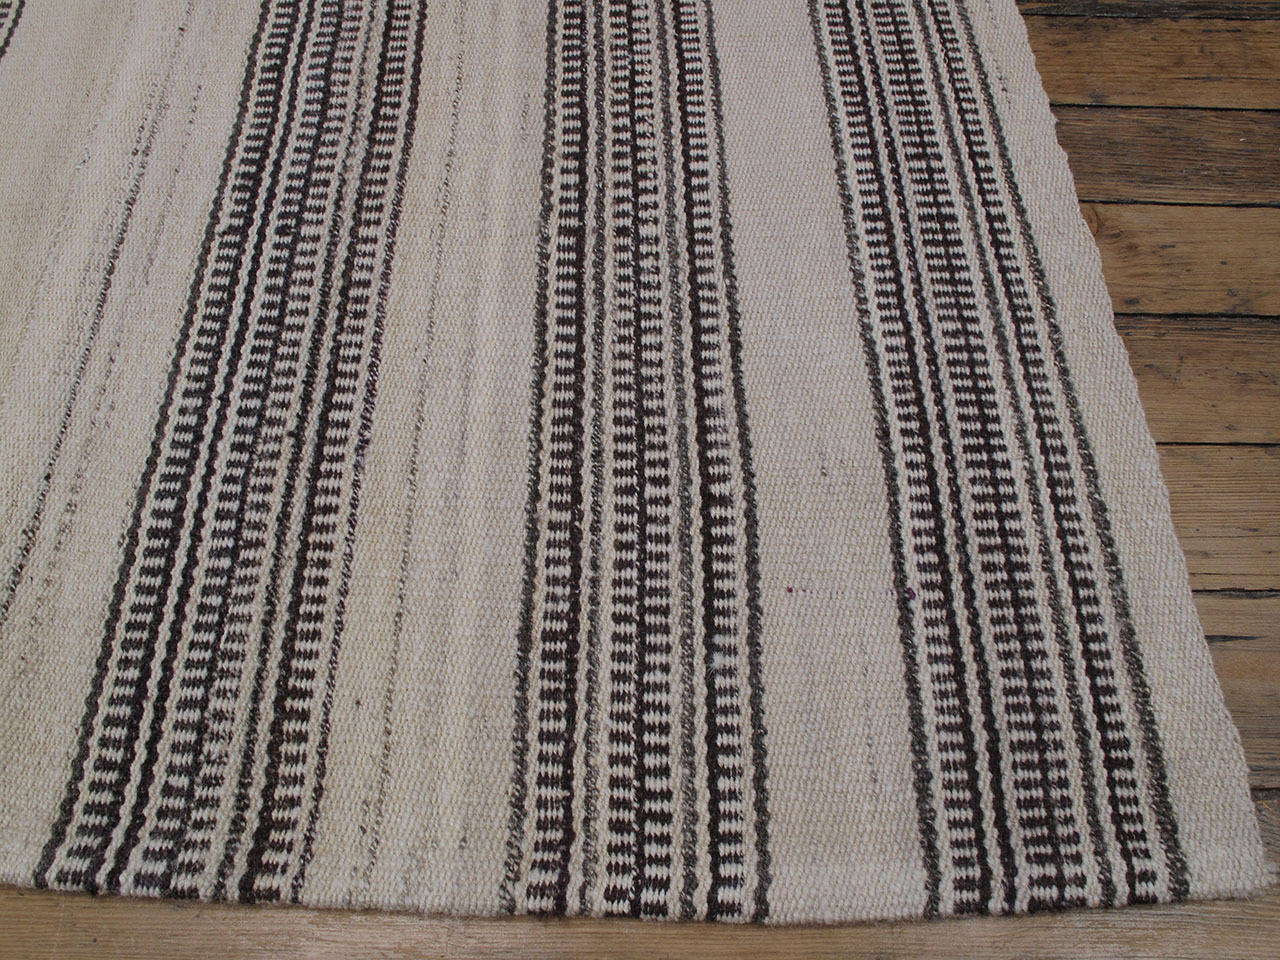 Striped Kilim in Natural Tones 1